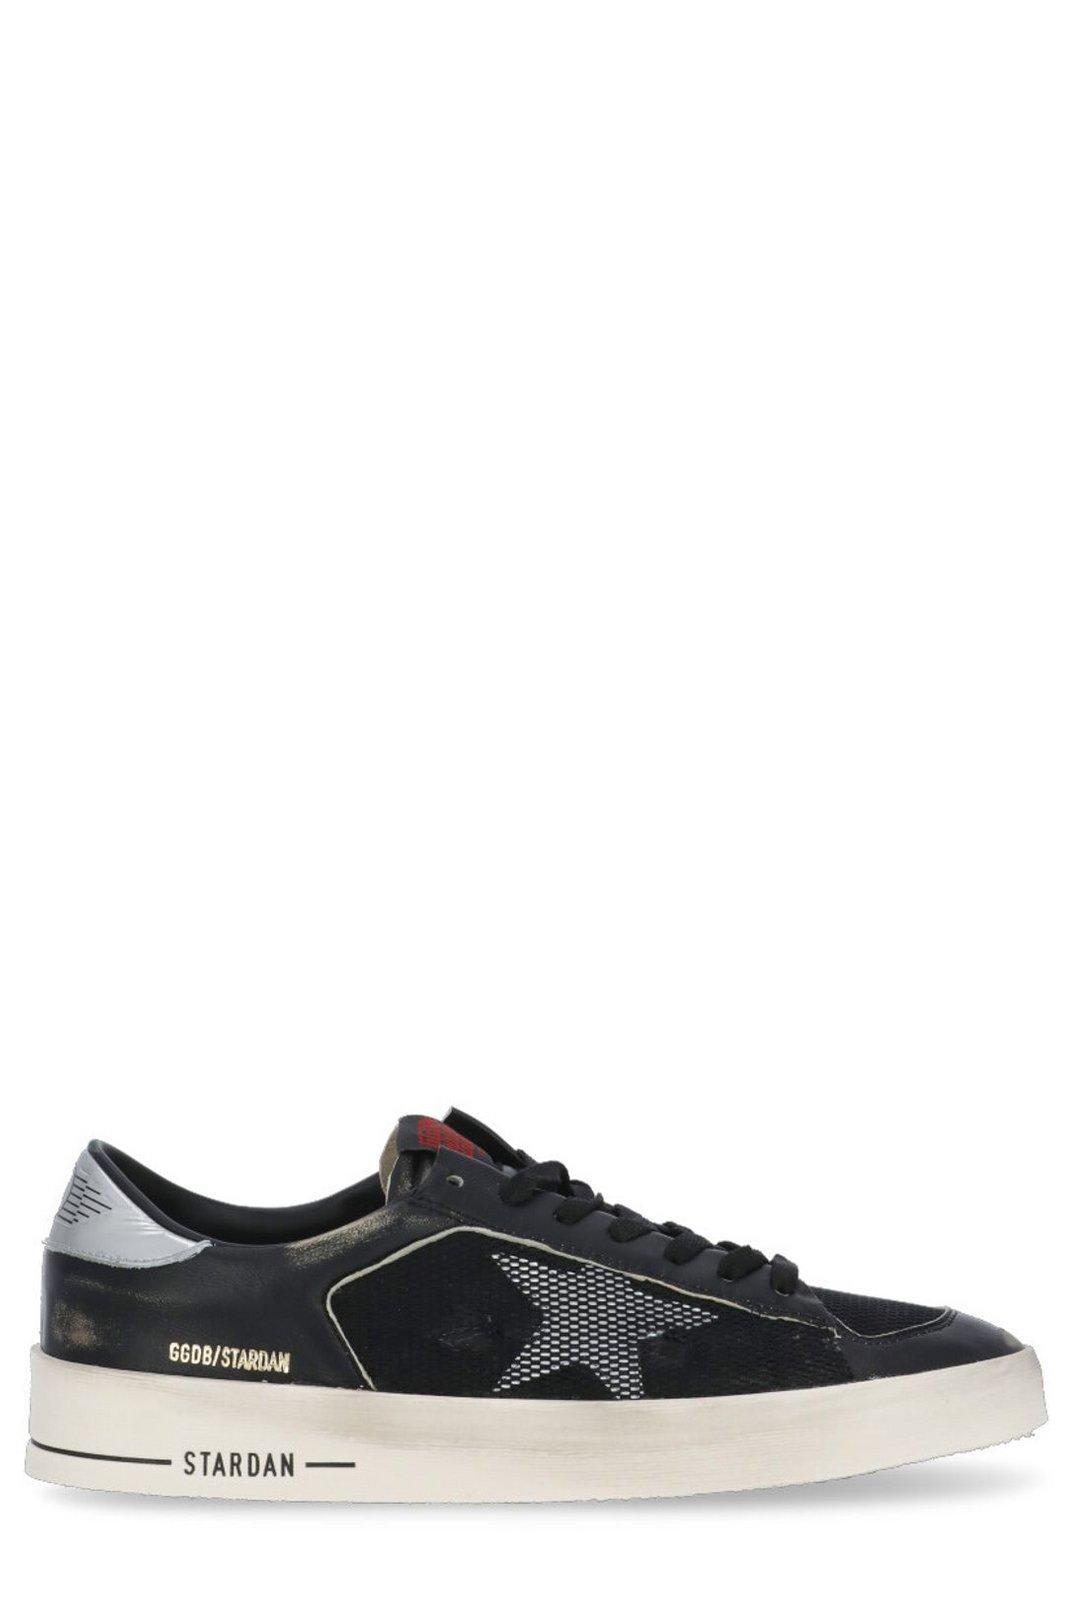 Shop Golden Goose Stardan Sneakers In Black